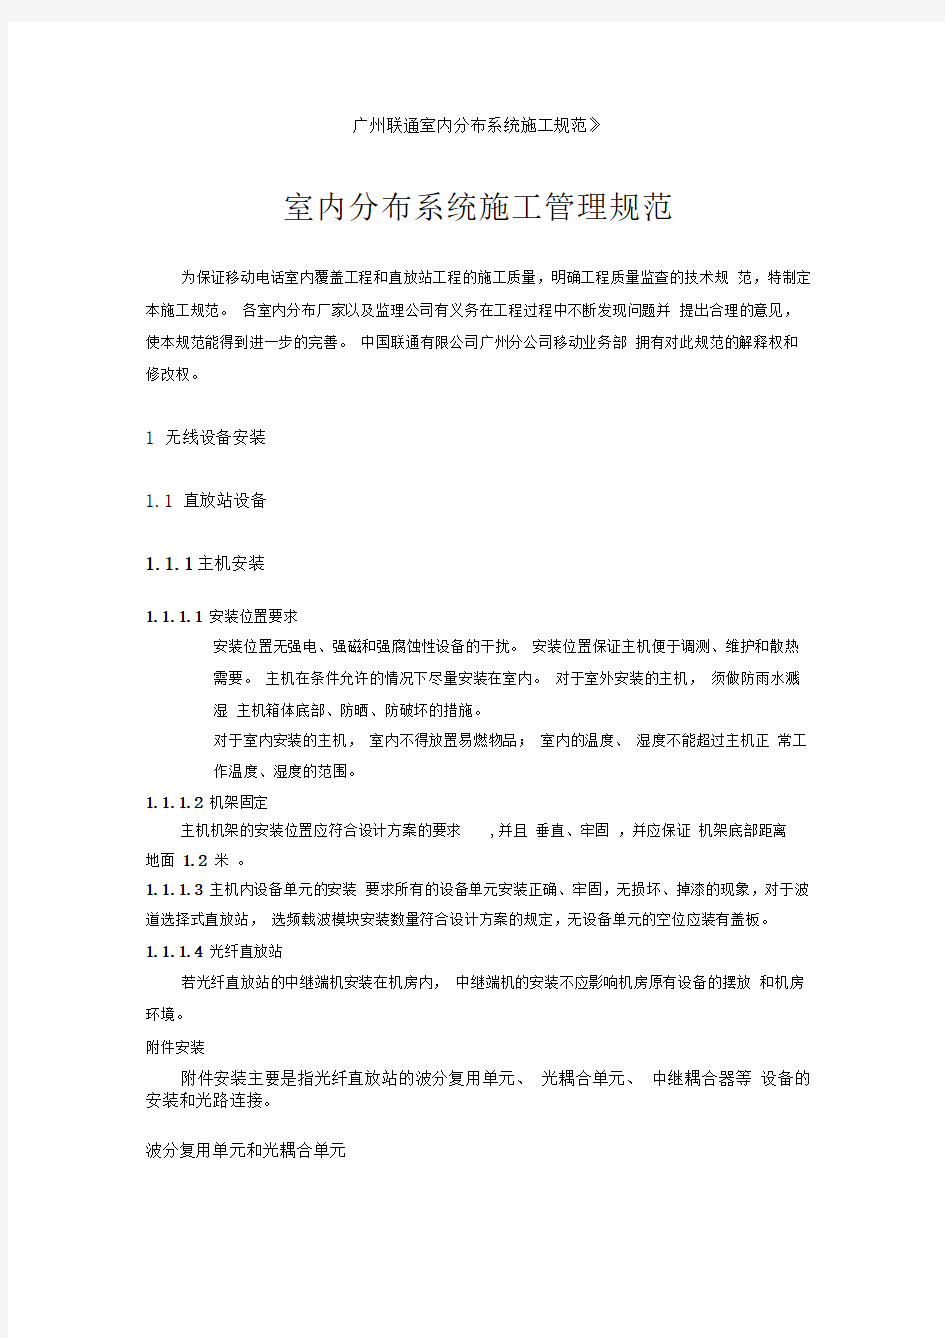 广州联通室内分布系统施工规范